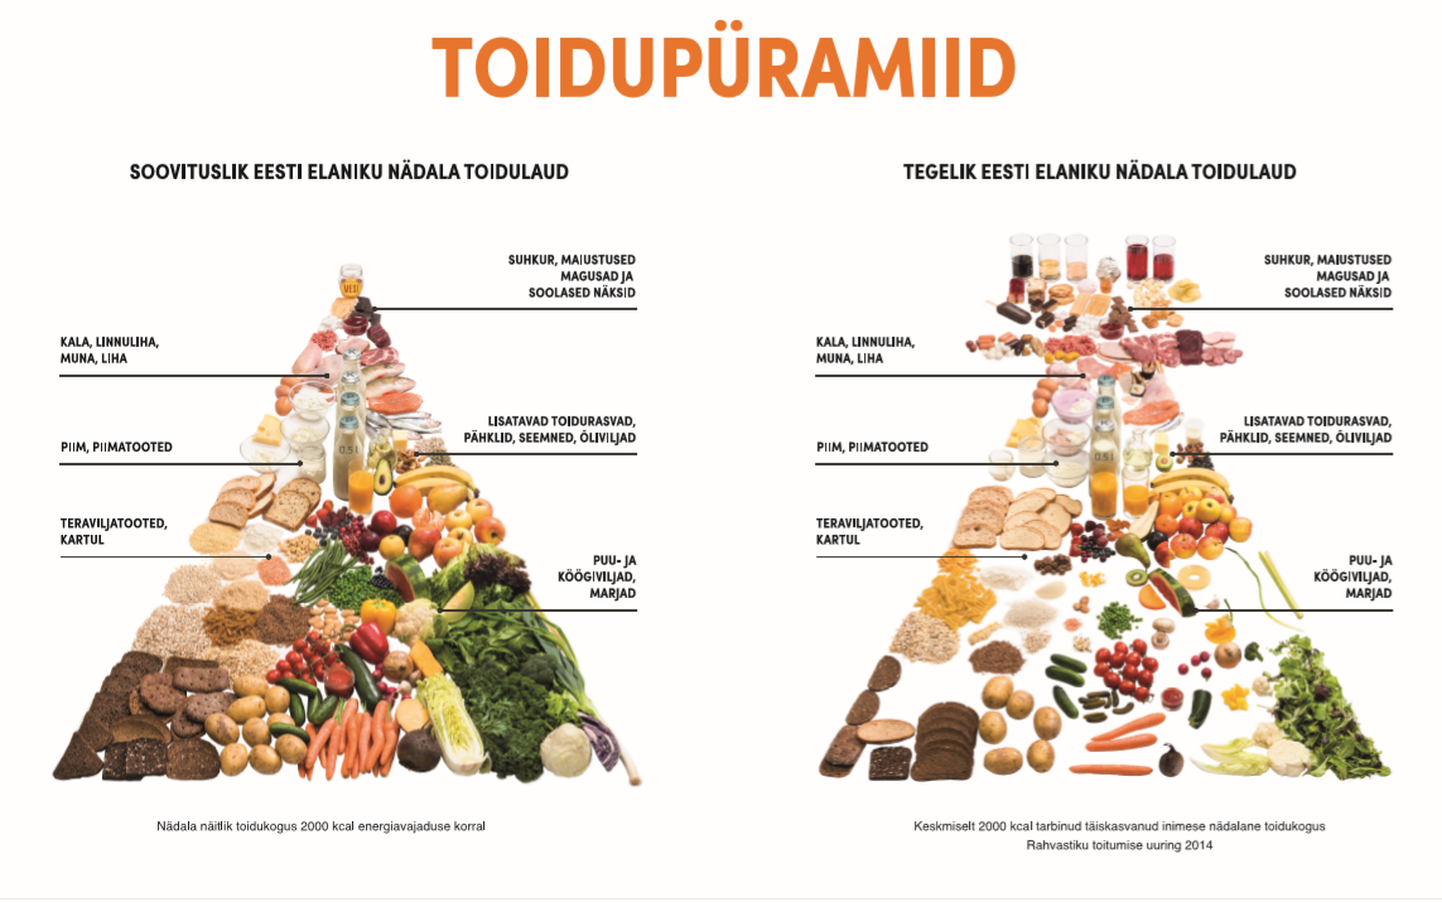 Soovituslik toidupüramiid võrdluses toitumusuuringu põhjal koostatud keskmise eestlase toidupüramiidiga.